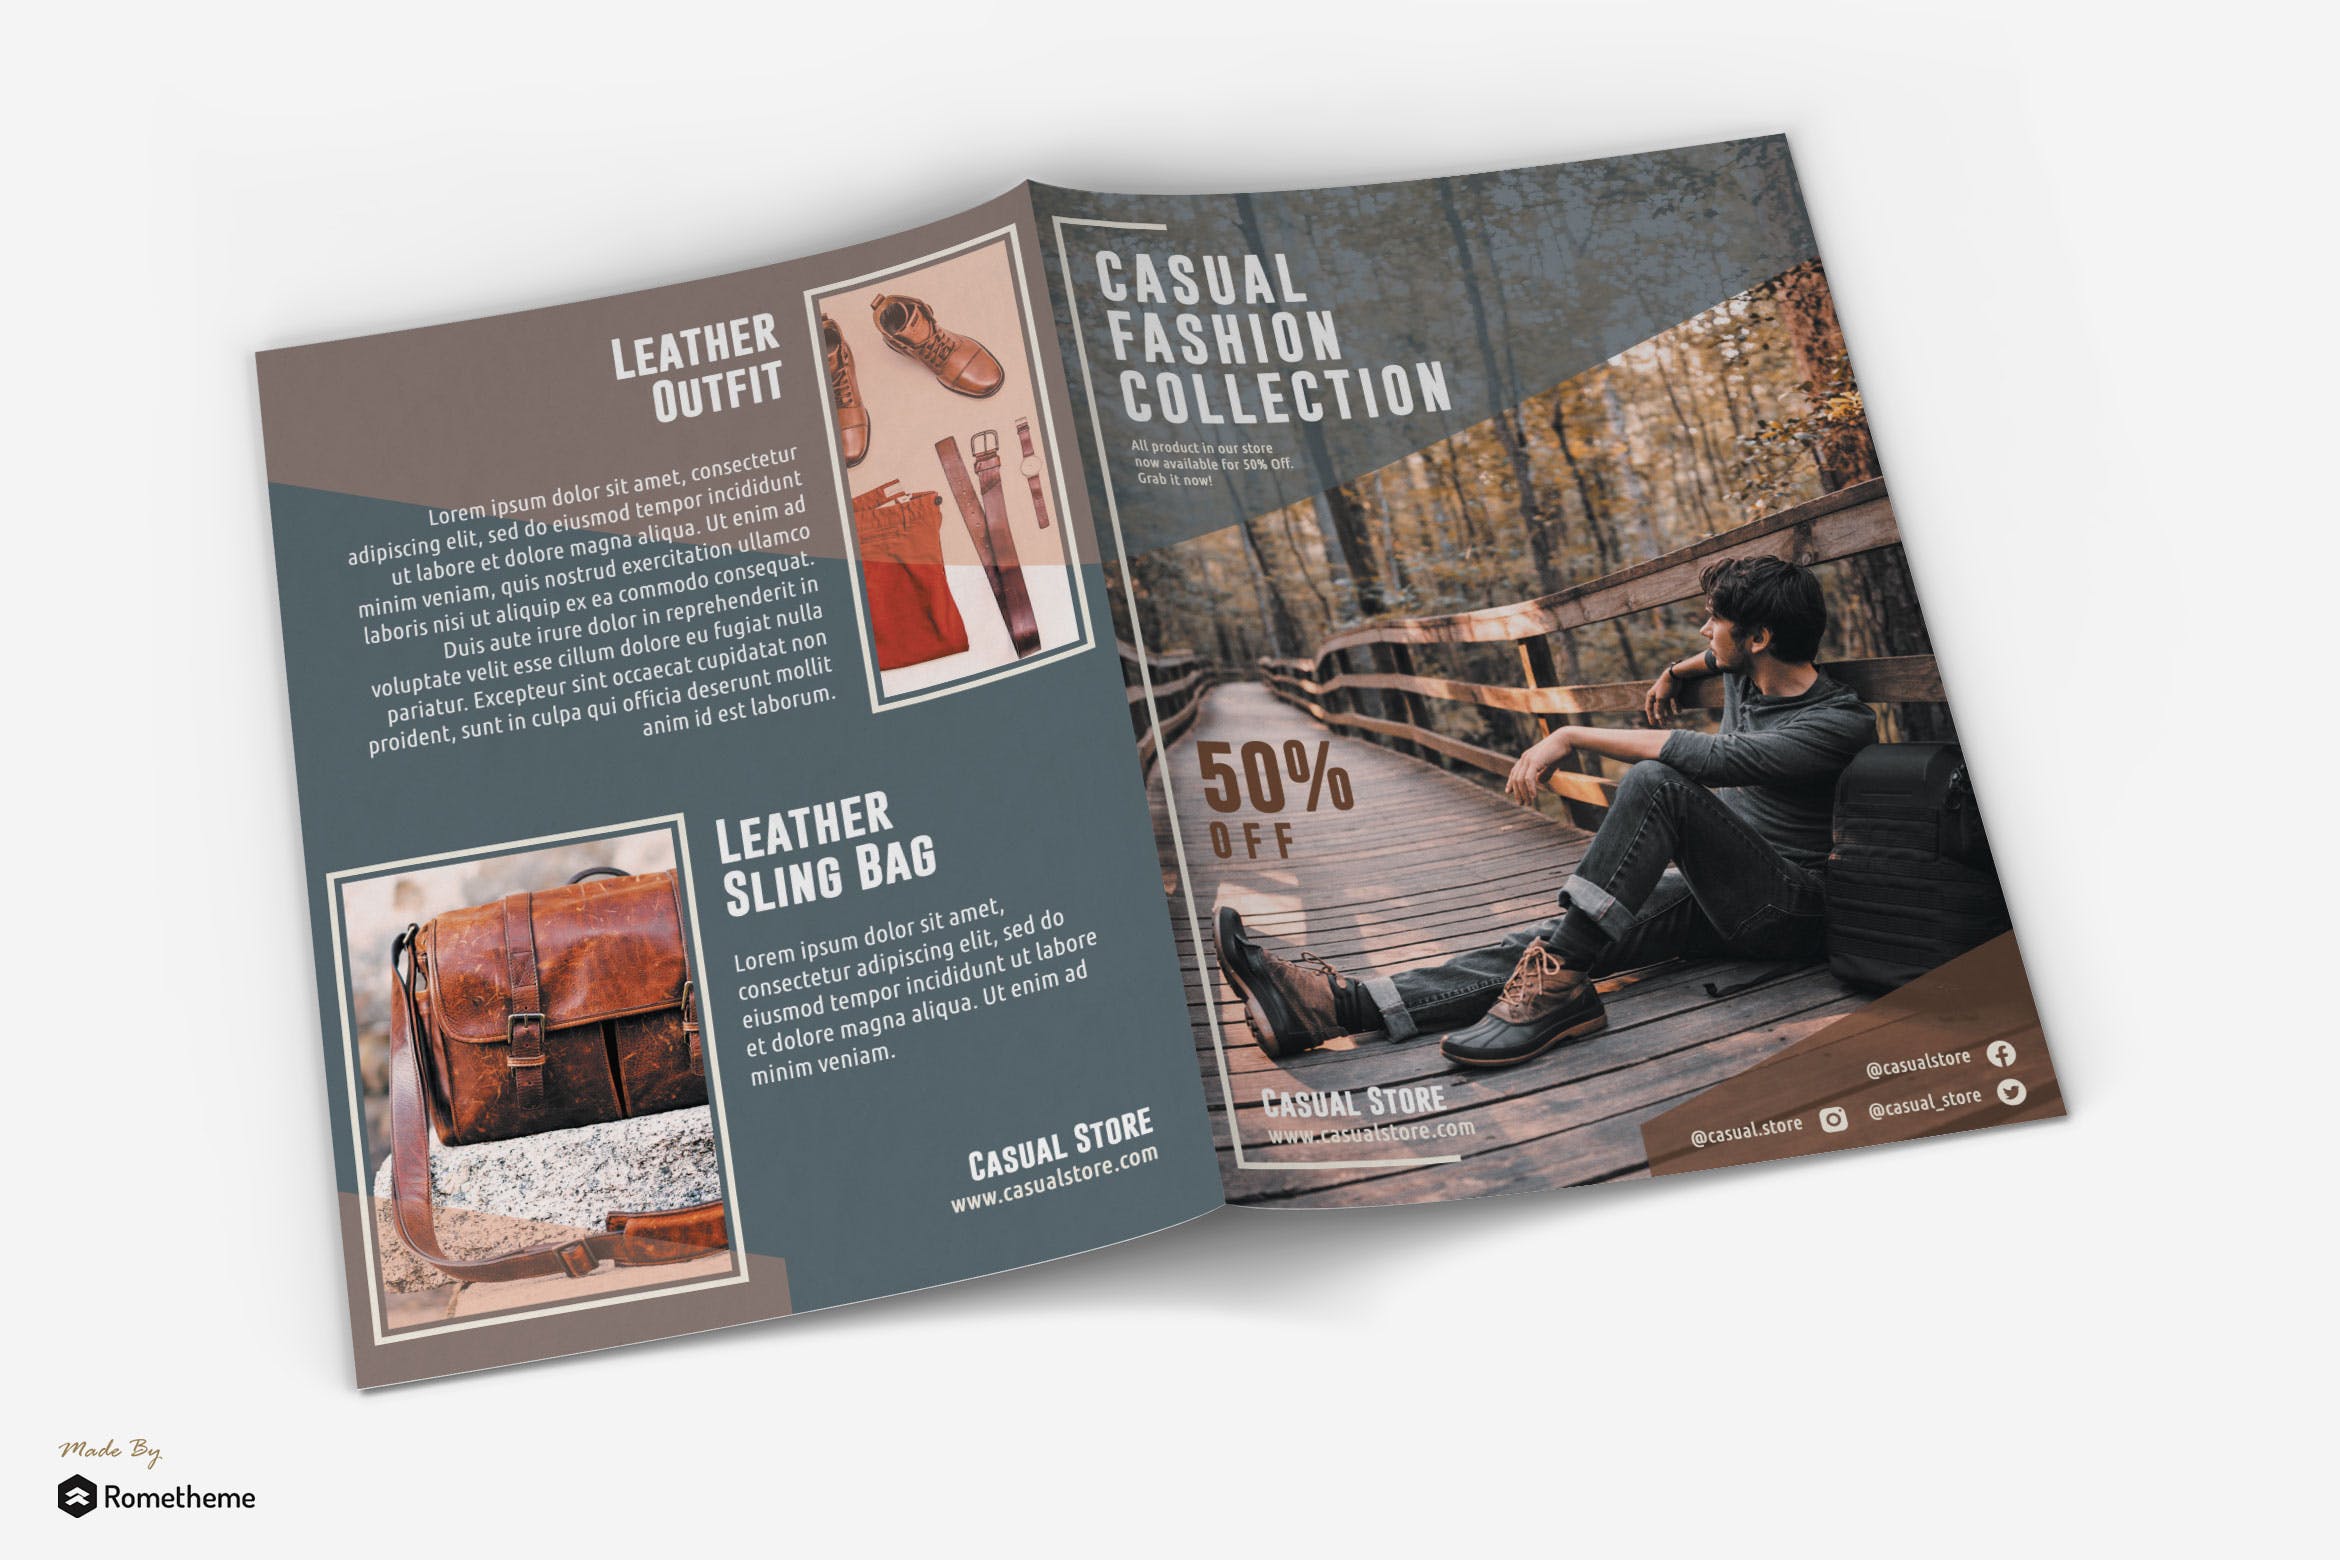 时尚皮革服饰/户外运动品牌宣传单设计模板 Casual – Fashion Bifold Brochure插图